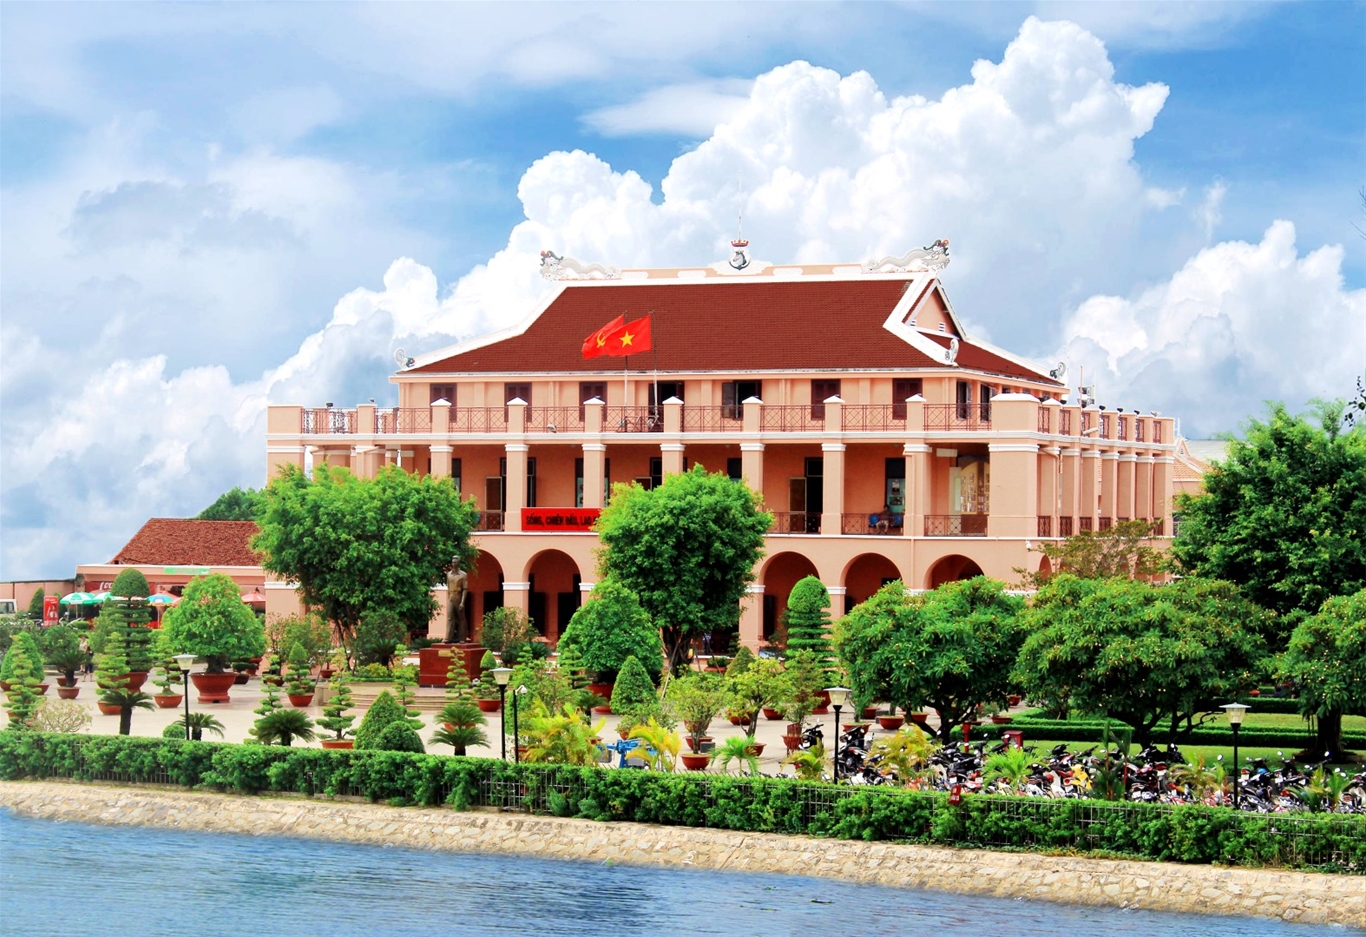 Bảo tàng Hồ Chí Minh - Bảo tàng Hồ Chí Minh là một địa điểm không thể bỏ qua khi đến thăm TPHCM. Đây là nơi giữ gìn và trưng bày những tư liệu và hiện vật liên quan đến Đồng chí Hồ Chí Minh, giúp khách tham quan hiểu thêm về con người và tầm quan trọng của Người cha của dân tộc.